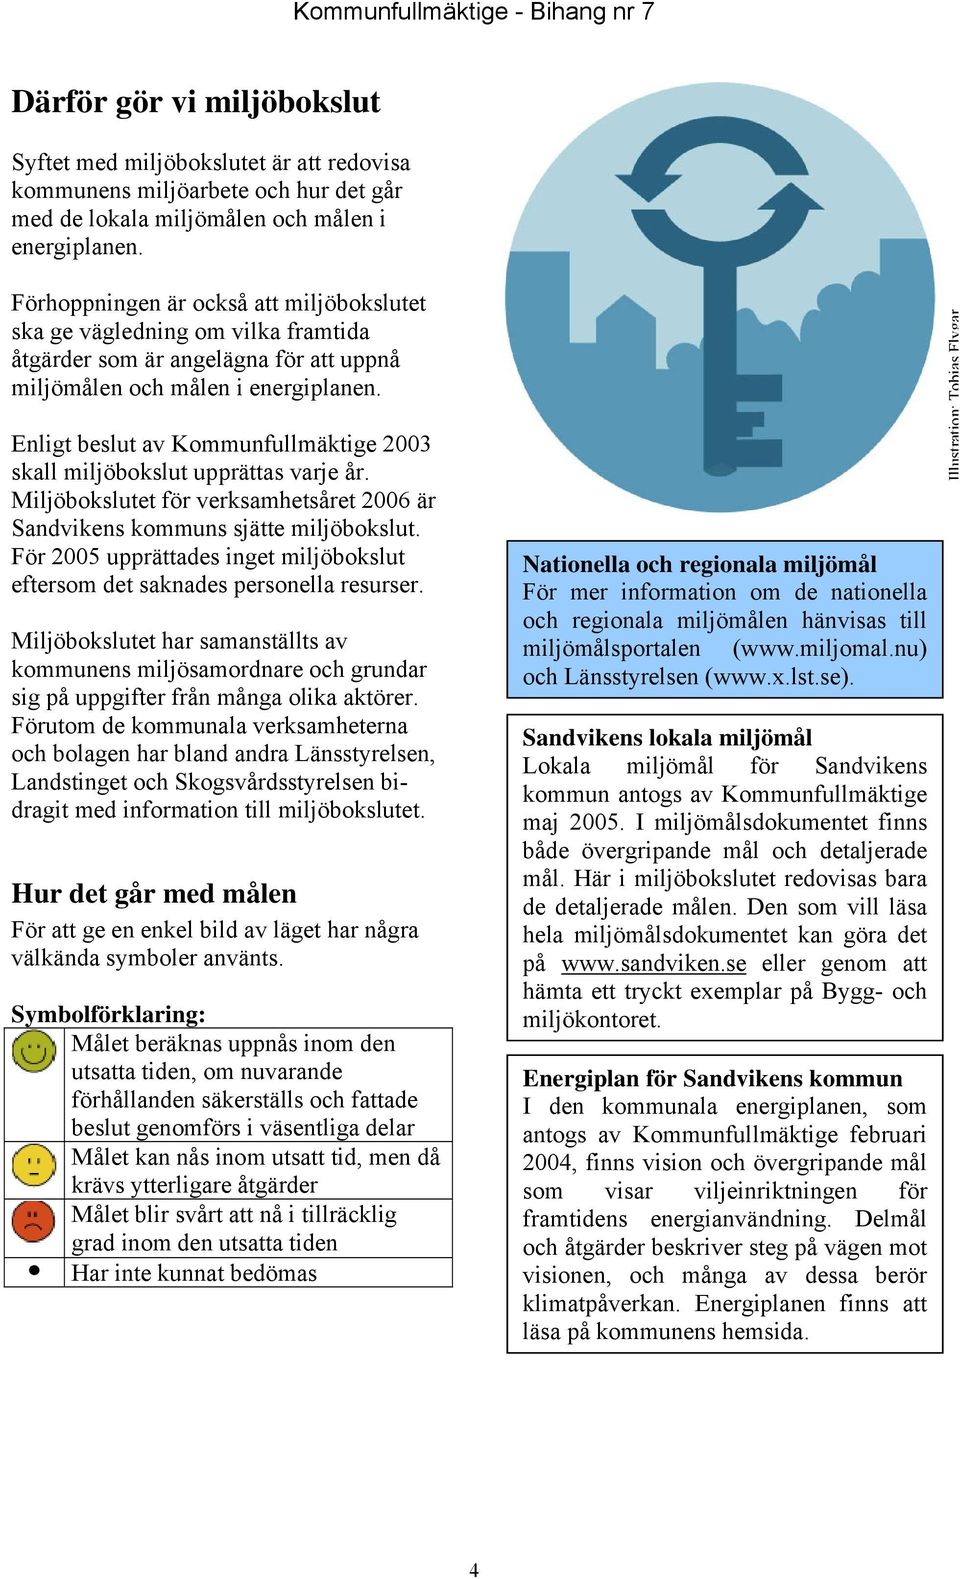 Enligt beslut av Kommunfullmäktige 2003 skall miljöbokslut upprättas varje år. Miljöbokslutet för verksamhetsåret 2006 är Sandvikens kommuns sjätte miljöbokslut.